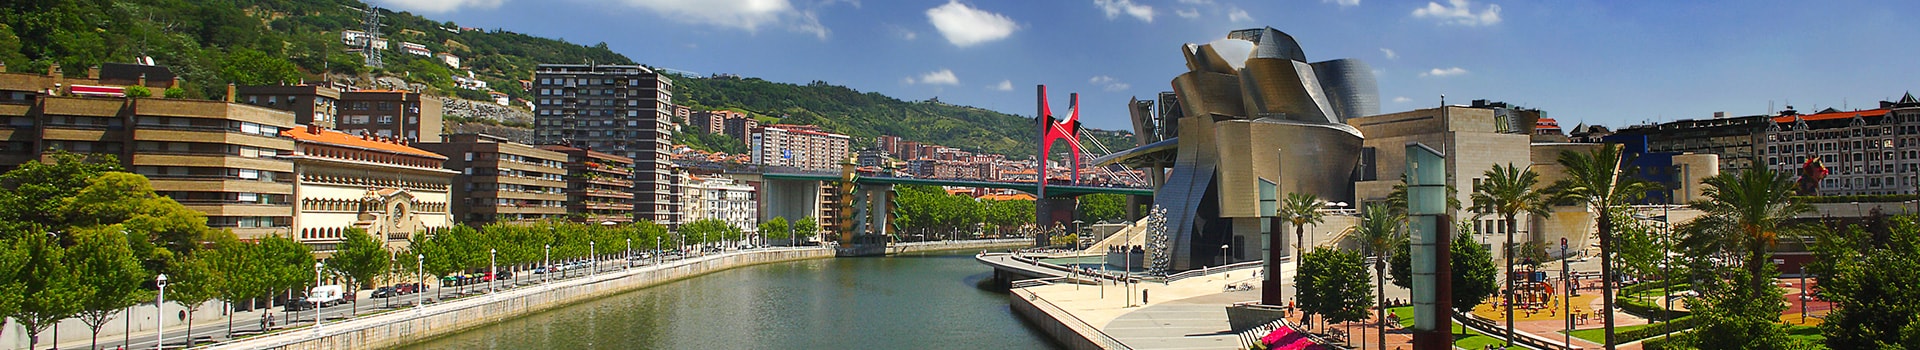 Mallorca - Bilbao